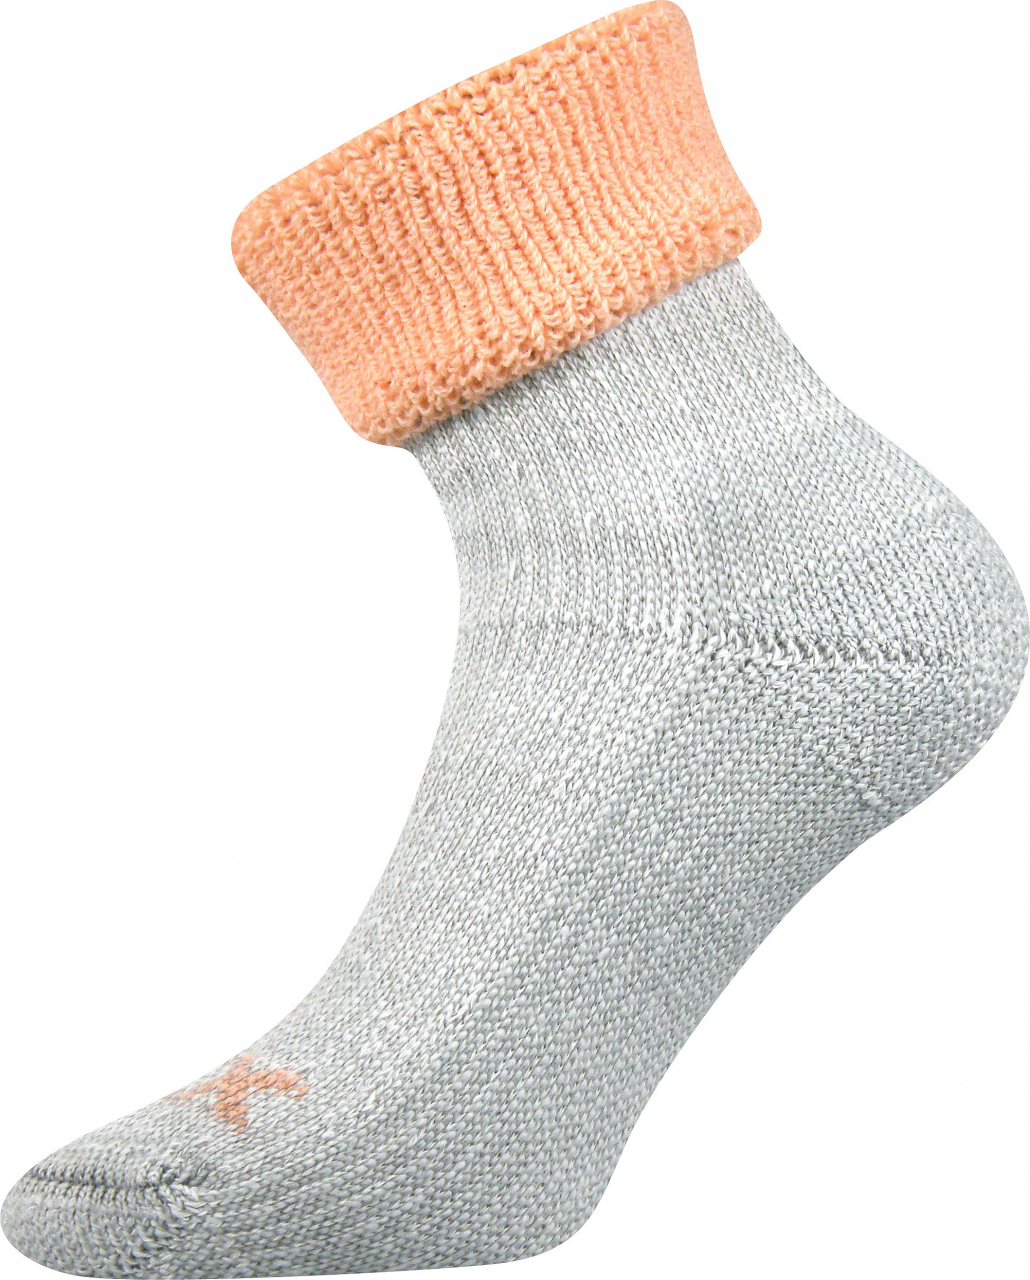 Ponožky dámské thermo Voxx Quanta - šedé-oranžové, 39-42